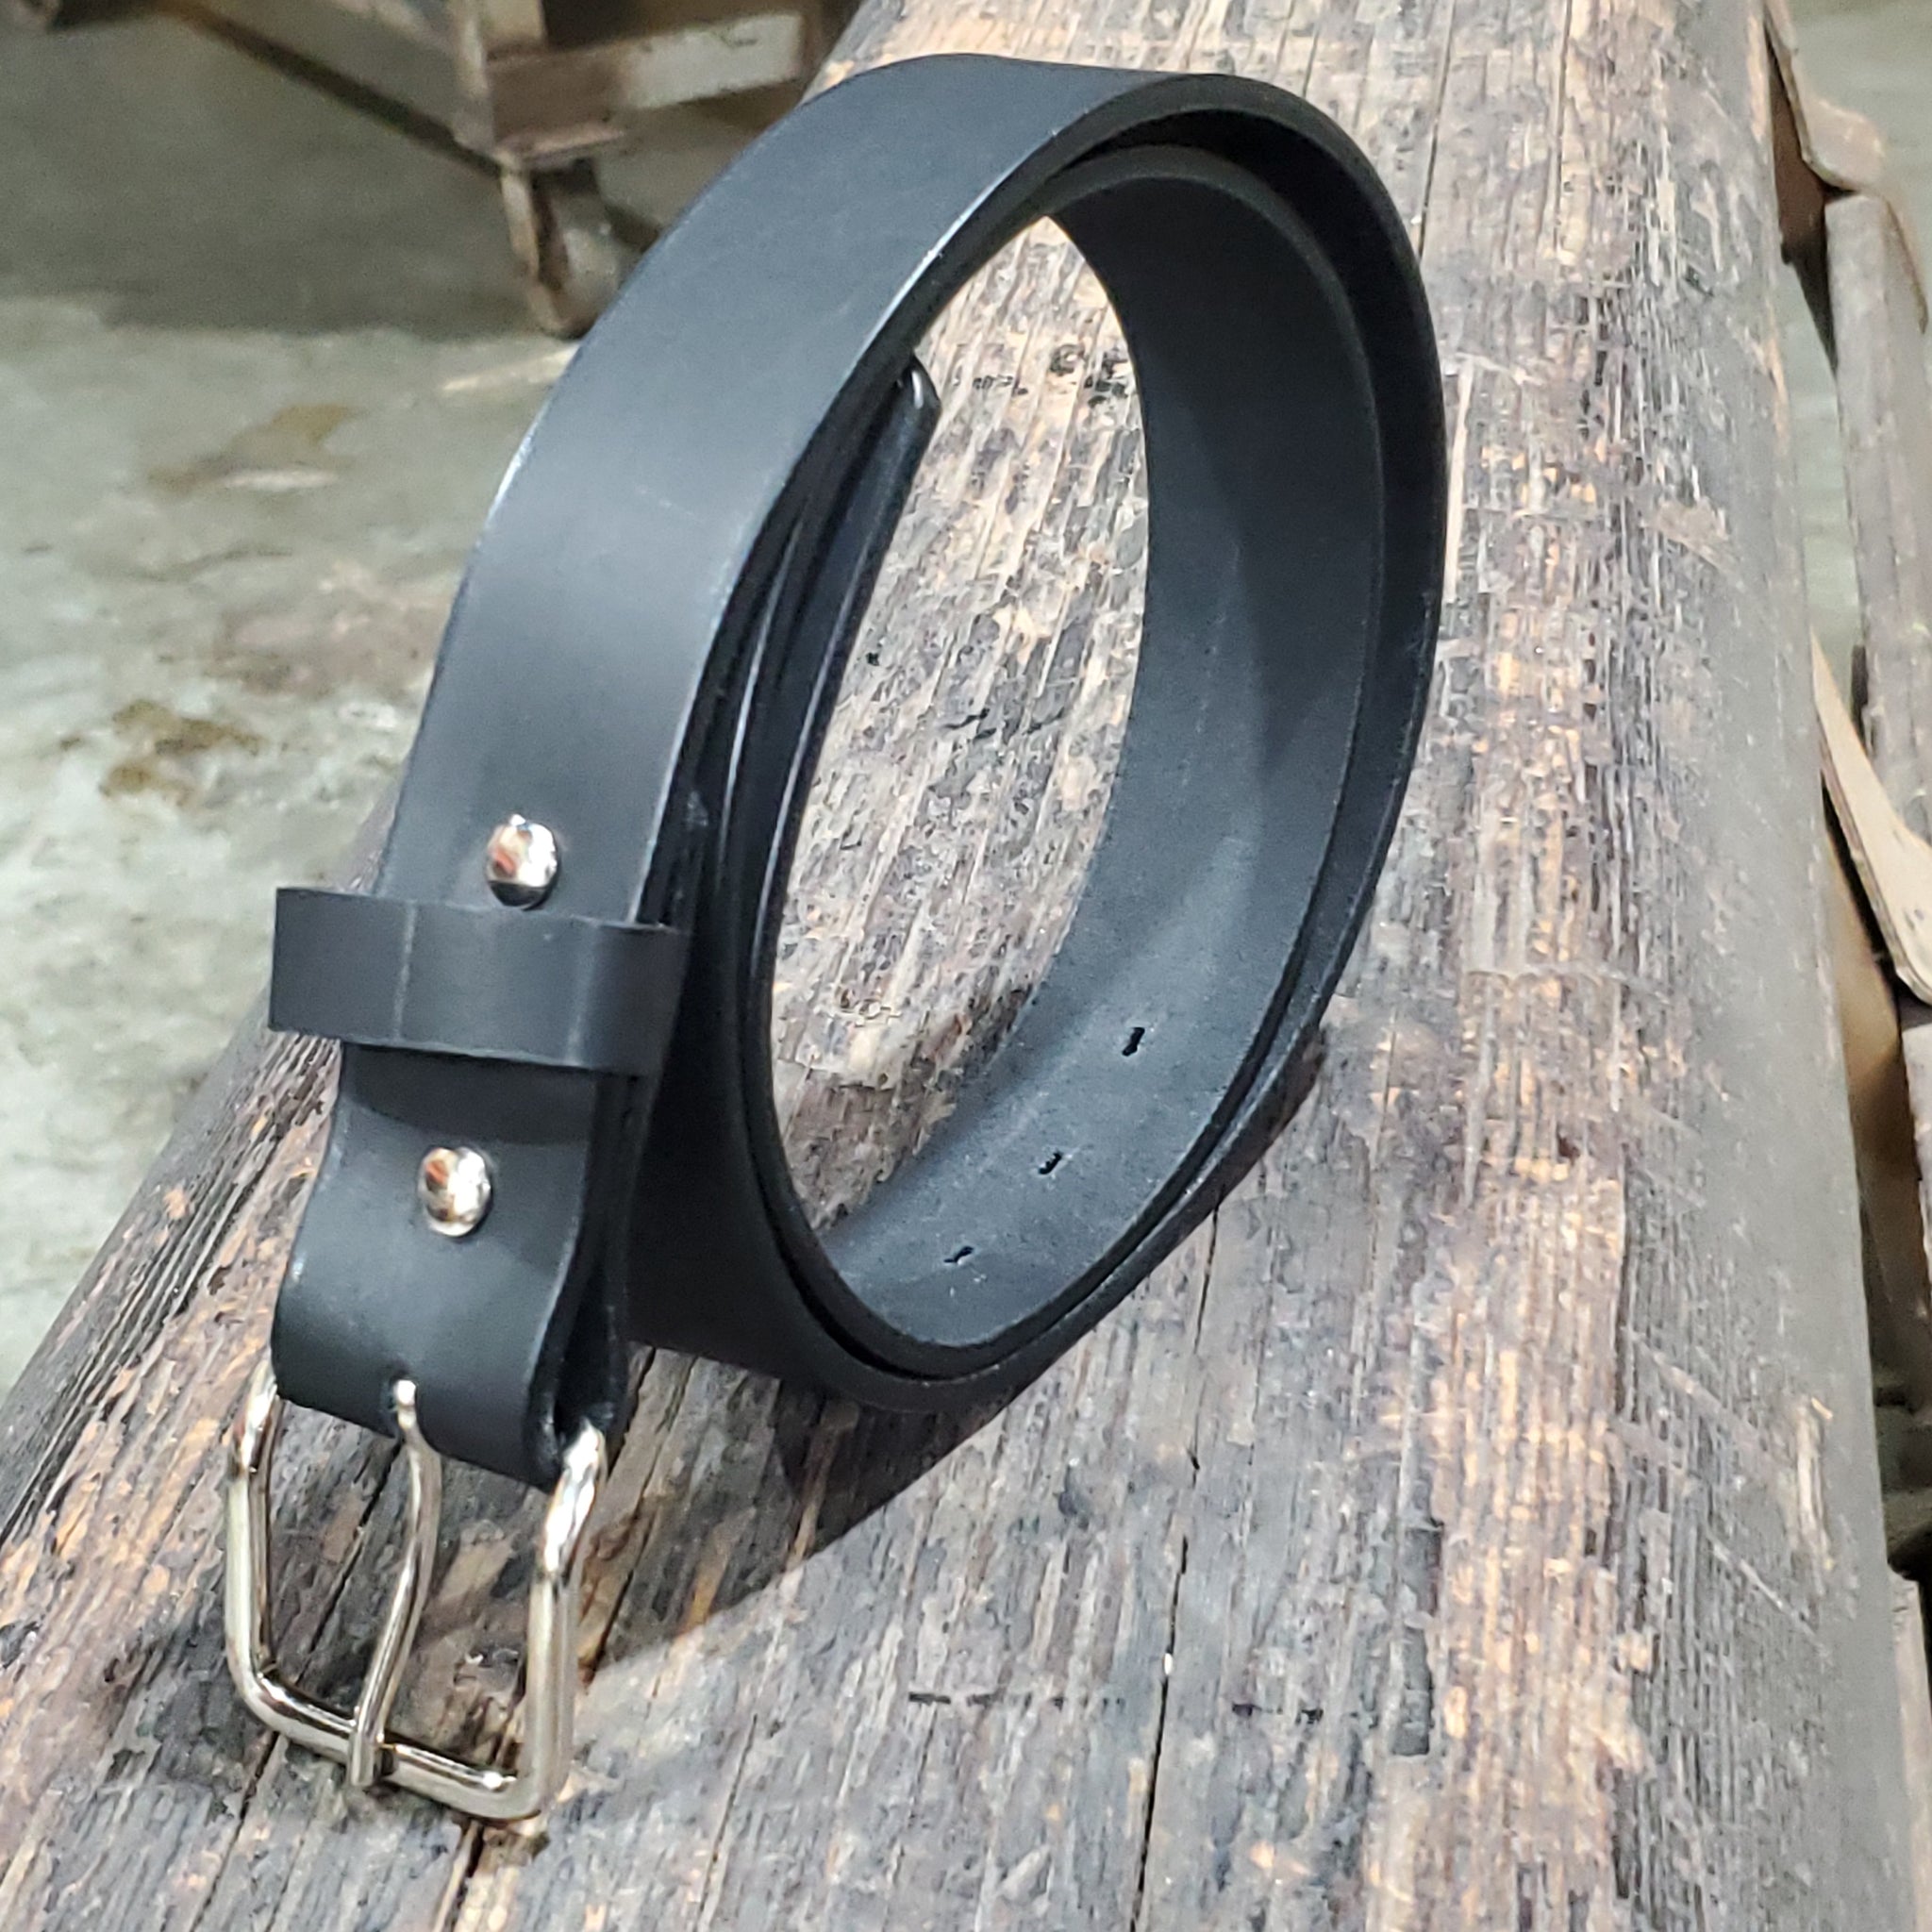 Men's Black Leather Belt - Made in France